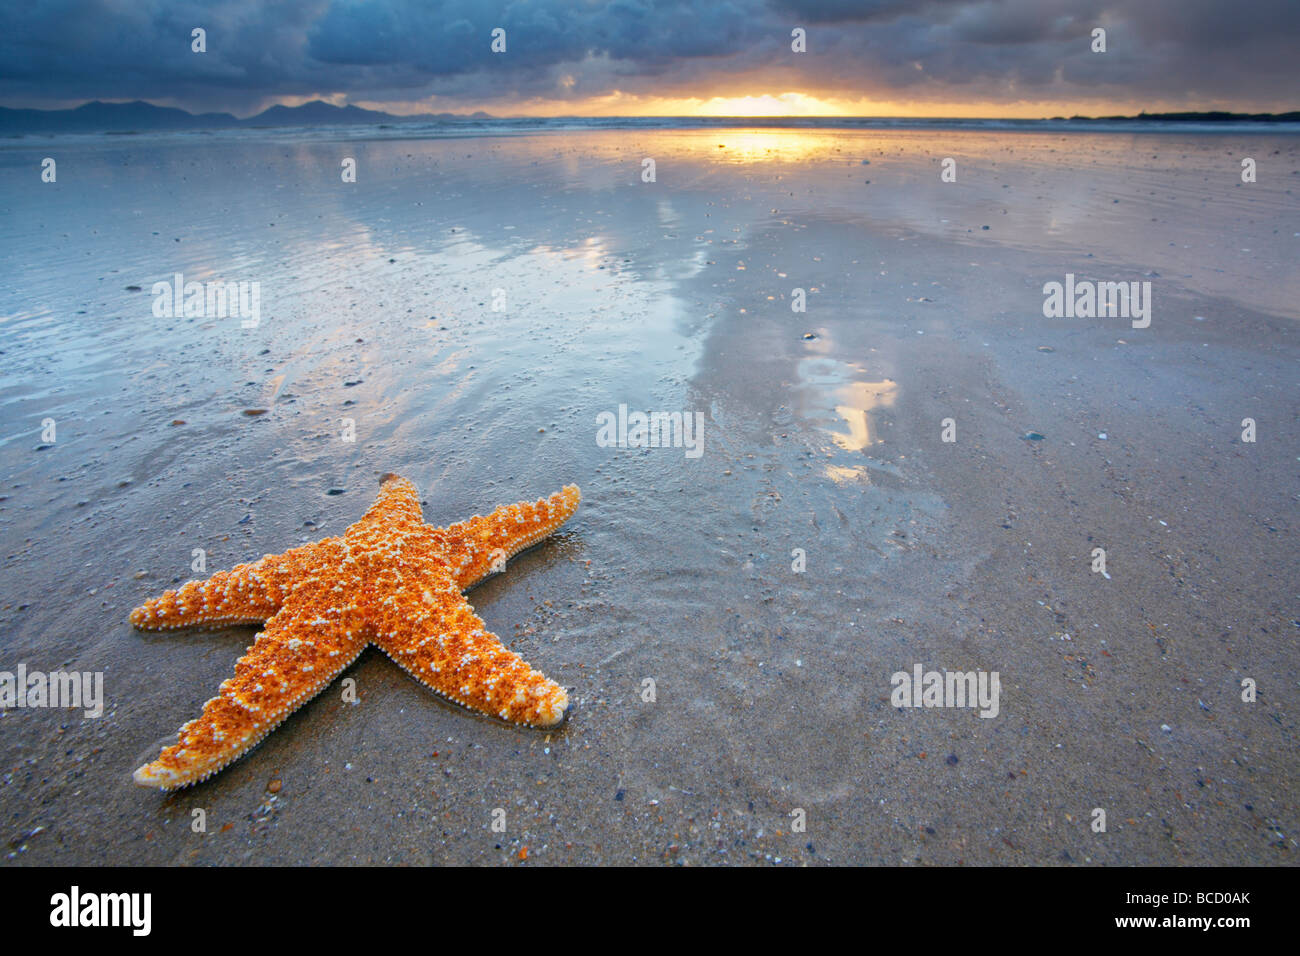 L'étoile de mer commune (Asterias rubens) sur la plage (mise en scène). Anglesey. Gwynedd. Pays de Galles Banque D'Images